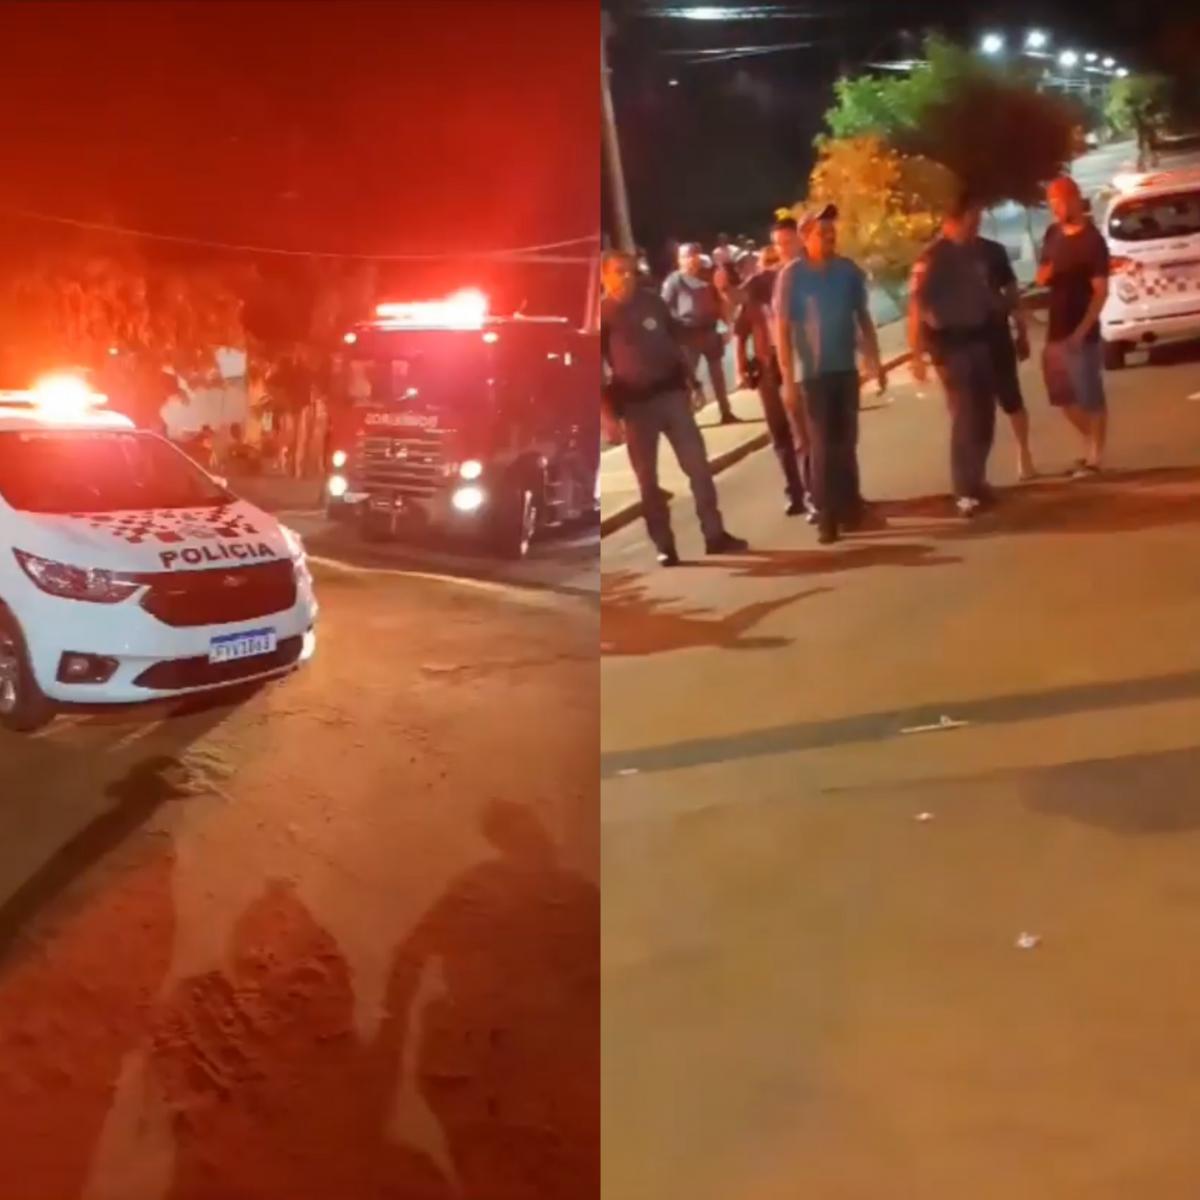 Samu de Jales atende ocorrência de esfaqueamento com briga generalizada no centro de Paranapuã